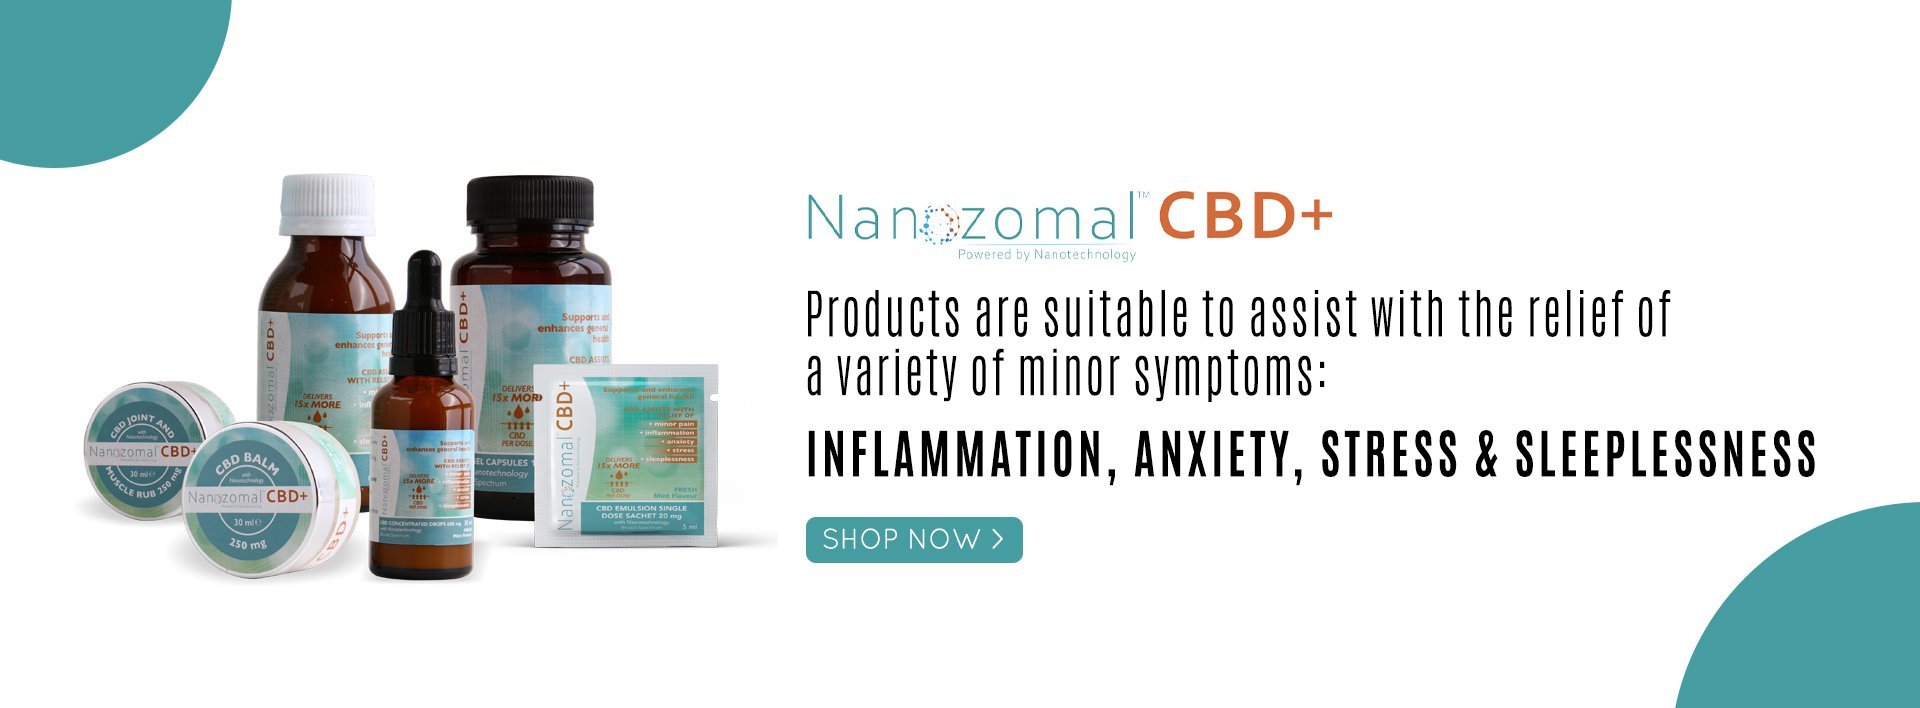 Nanozomal CBD | retailbox.co.za